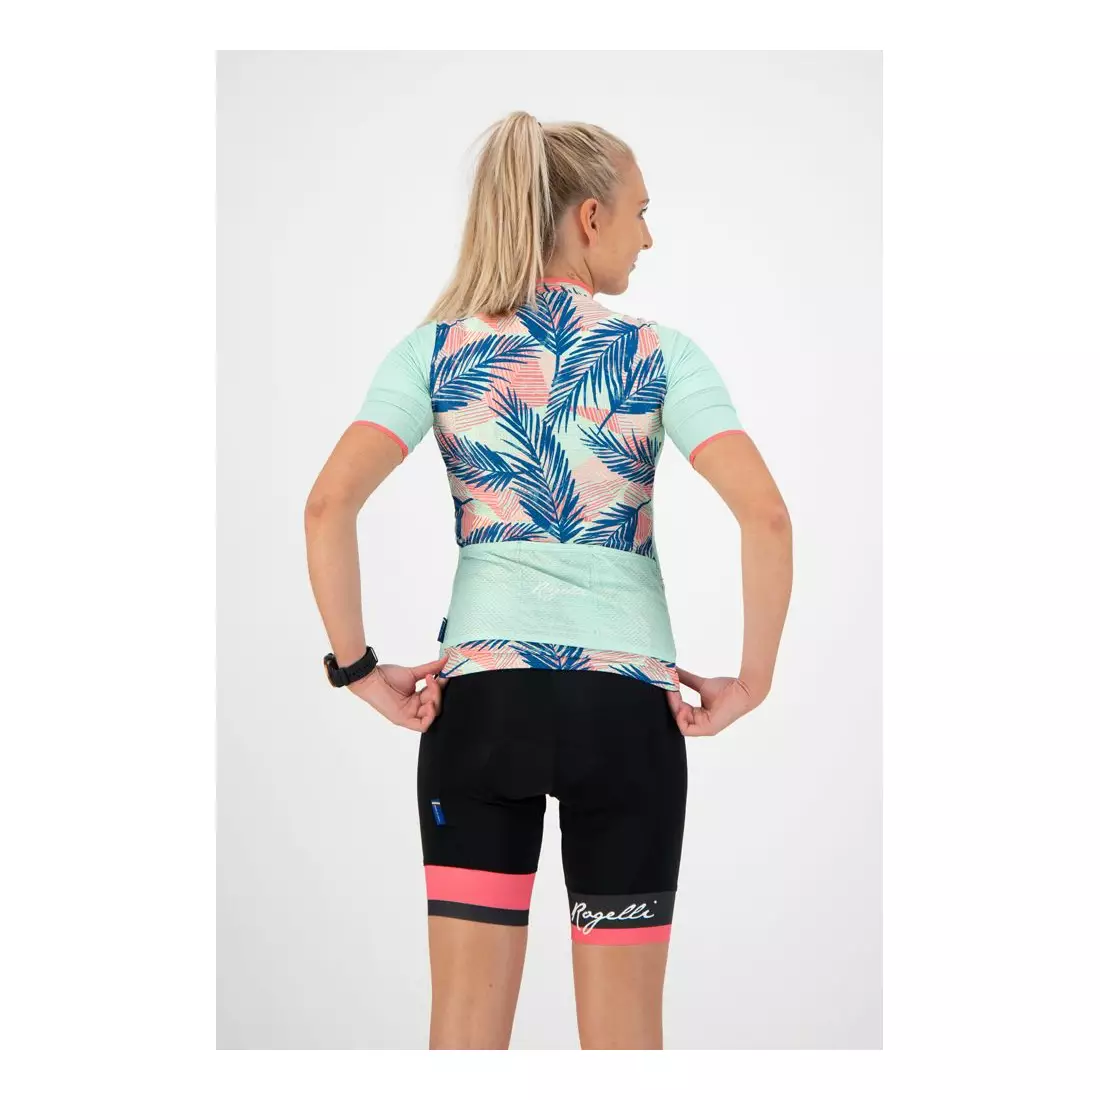 ROGELLI women's cycling jersey LEAF mint 010.087